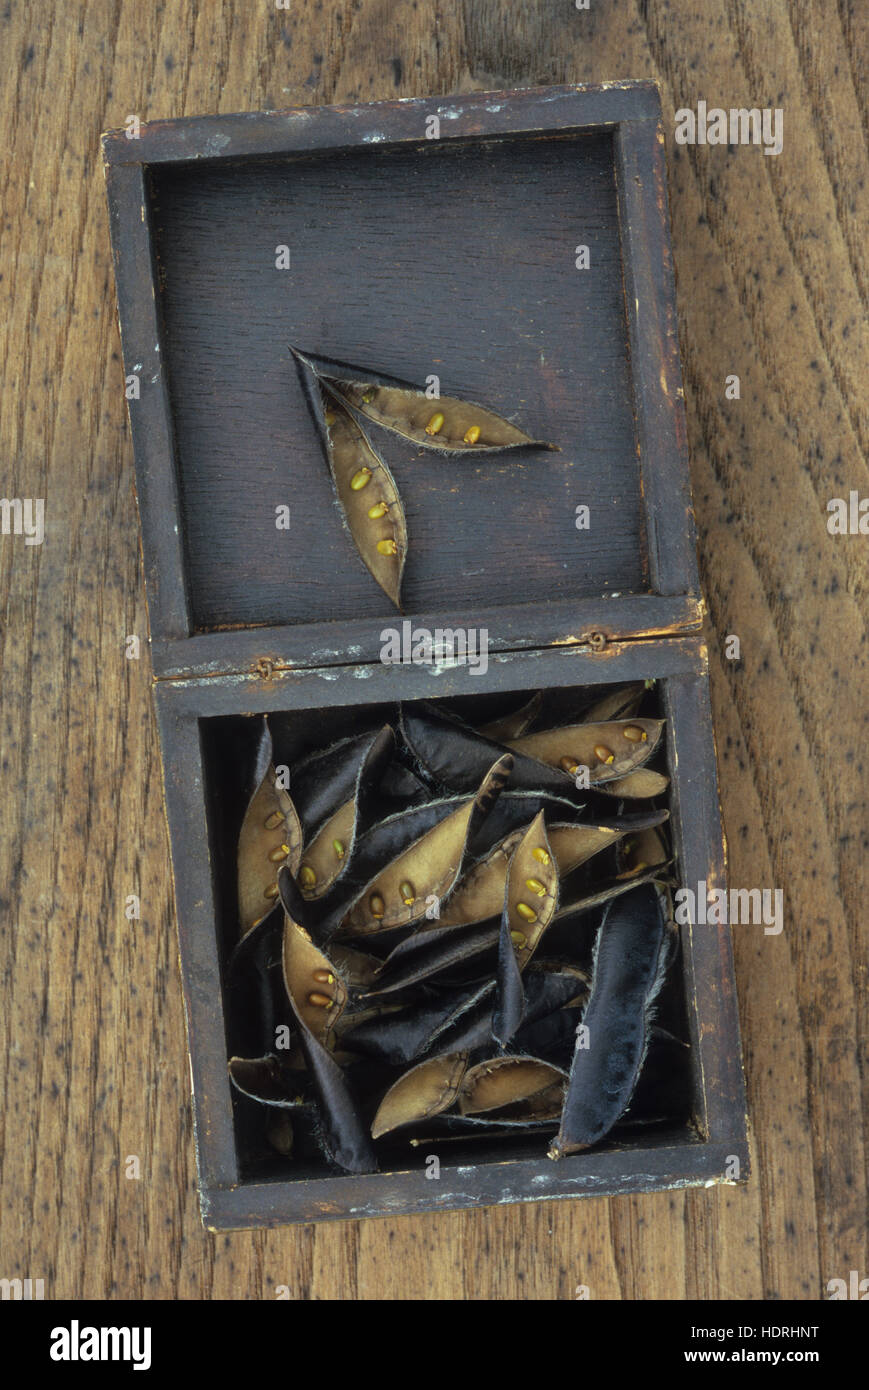 Schwarzen Samenkapseln von Besen oder Cytisus Scoparius Bush Aufplatzen enthüllt Goldene Samen liegen in Blackbox Stockfoto